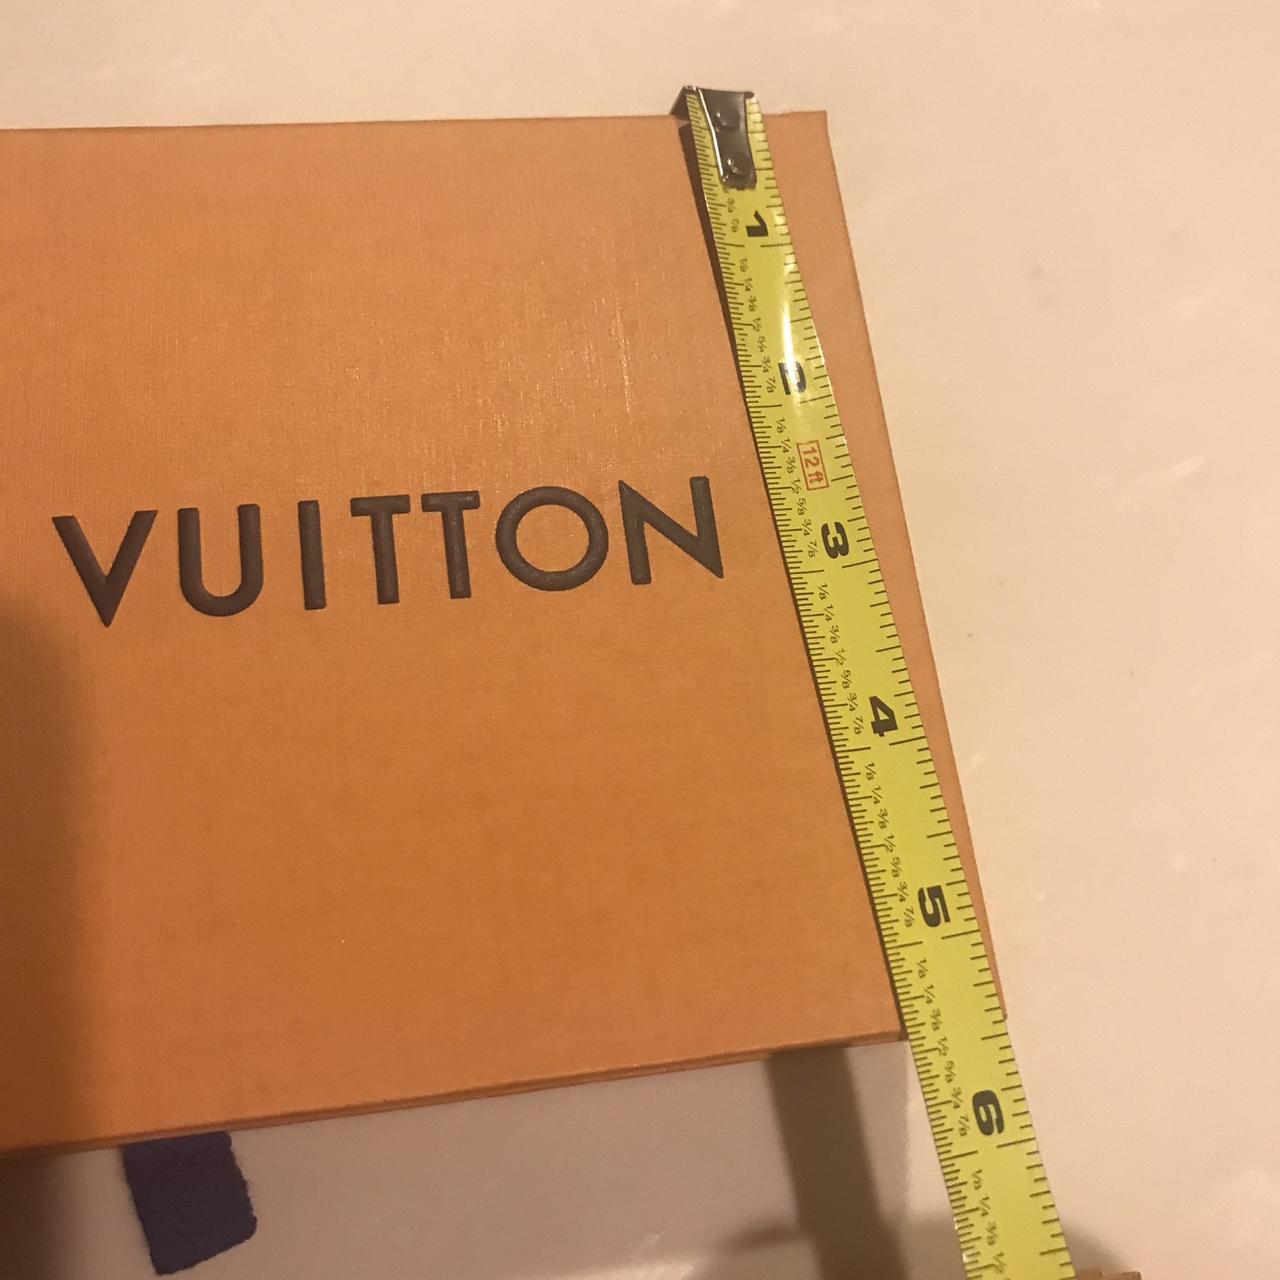 Louis Vuitton magnetic empty box Louis Vuitton - Depop